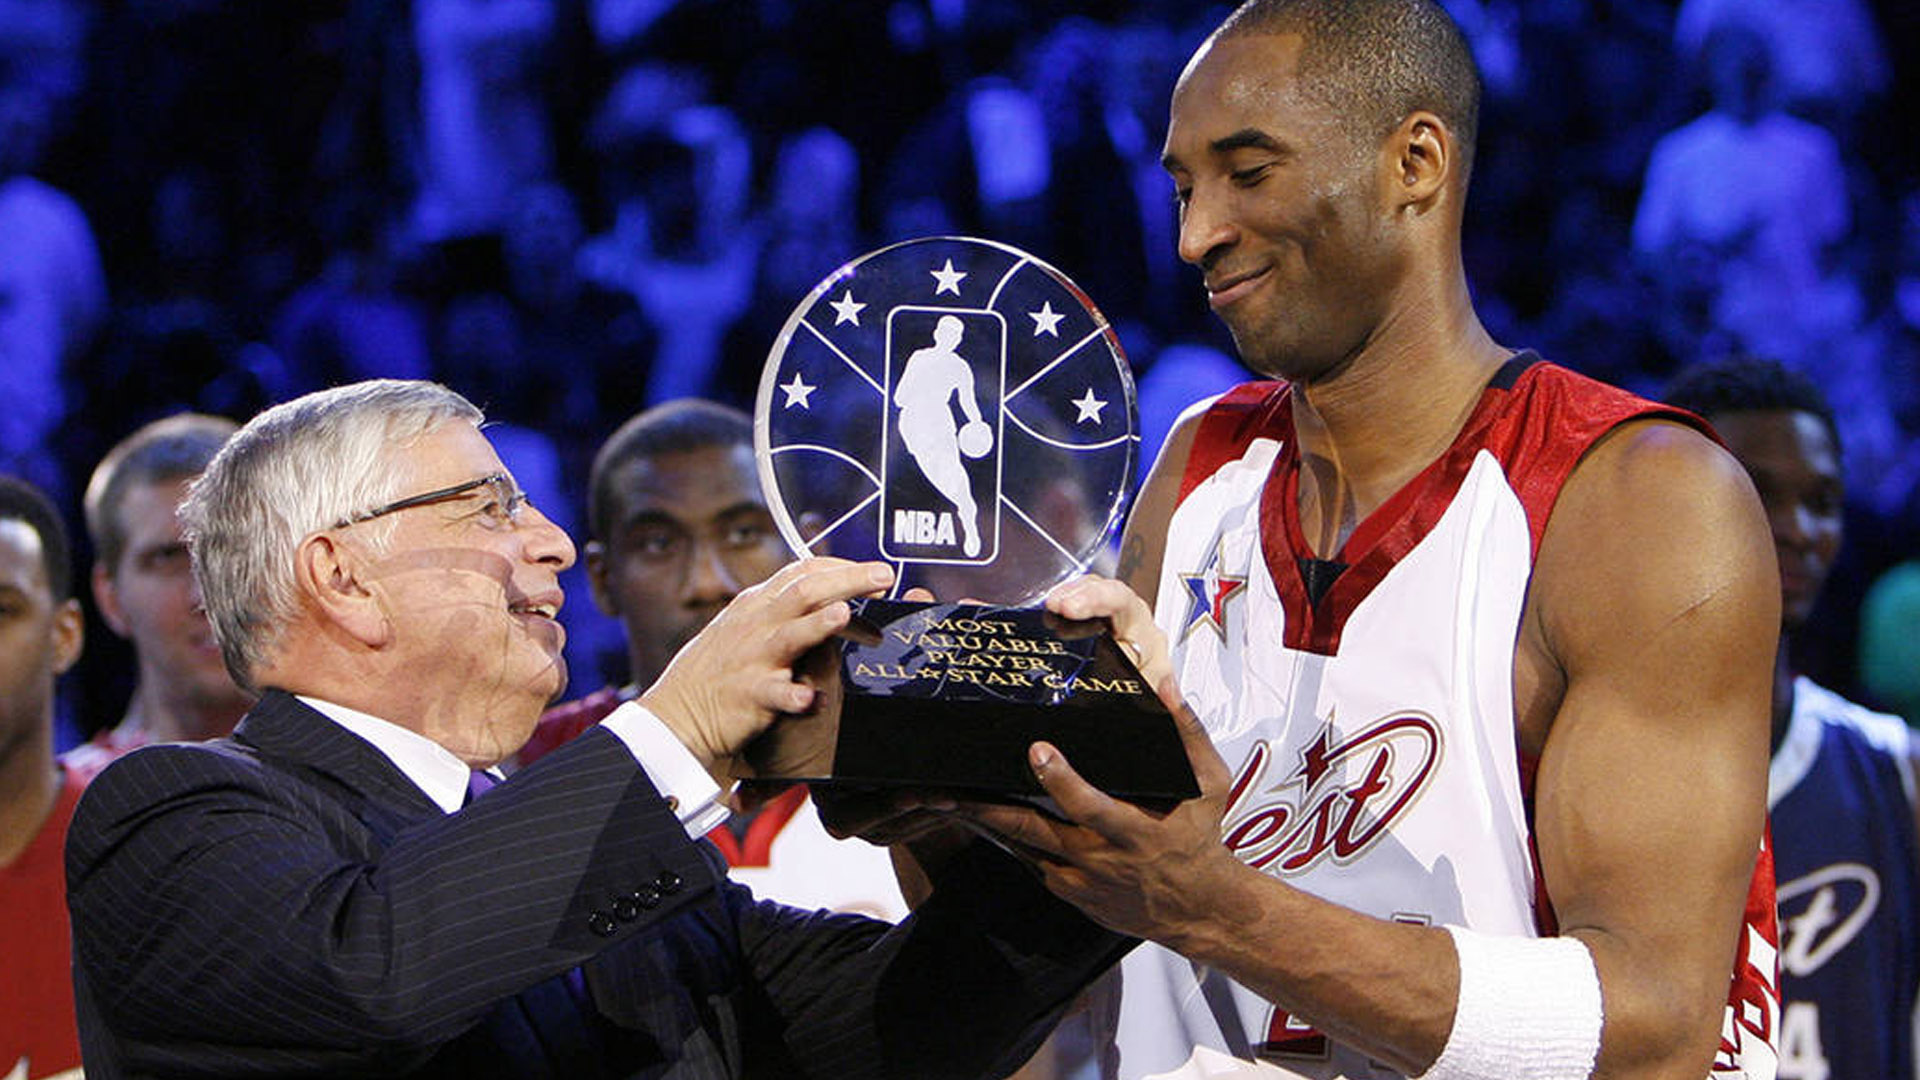 NBA thay đổi luật thi đấu All-Star game để tri ân Kobe Bryant - Ảnh 3.